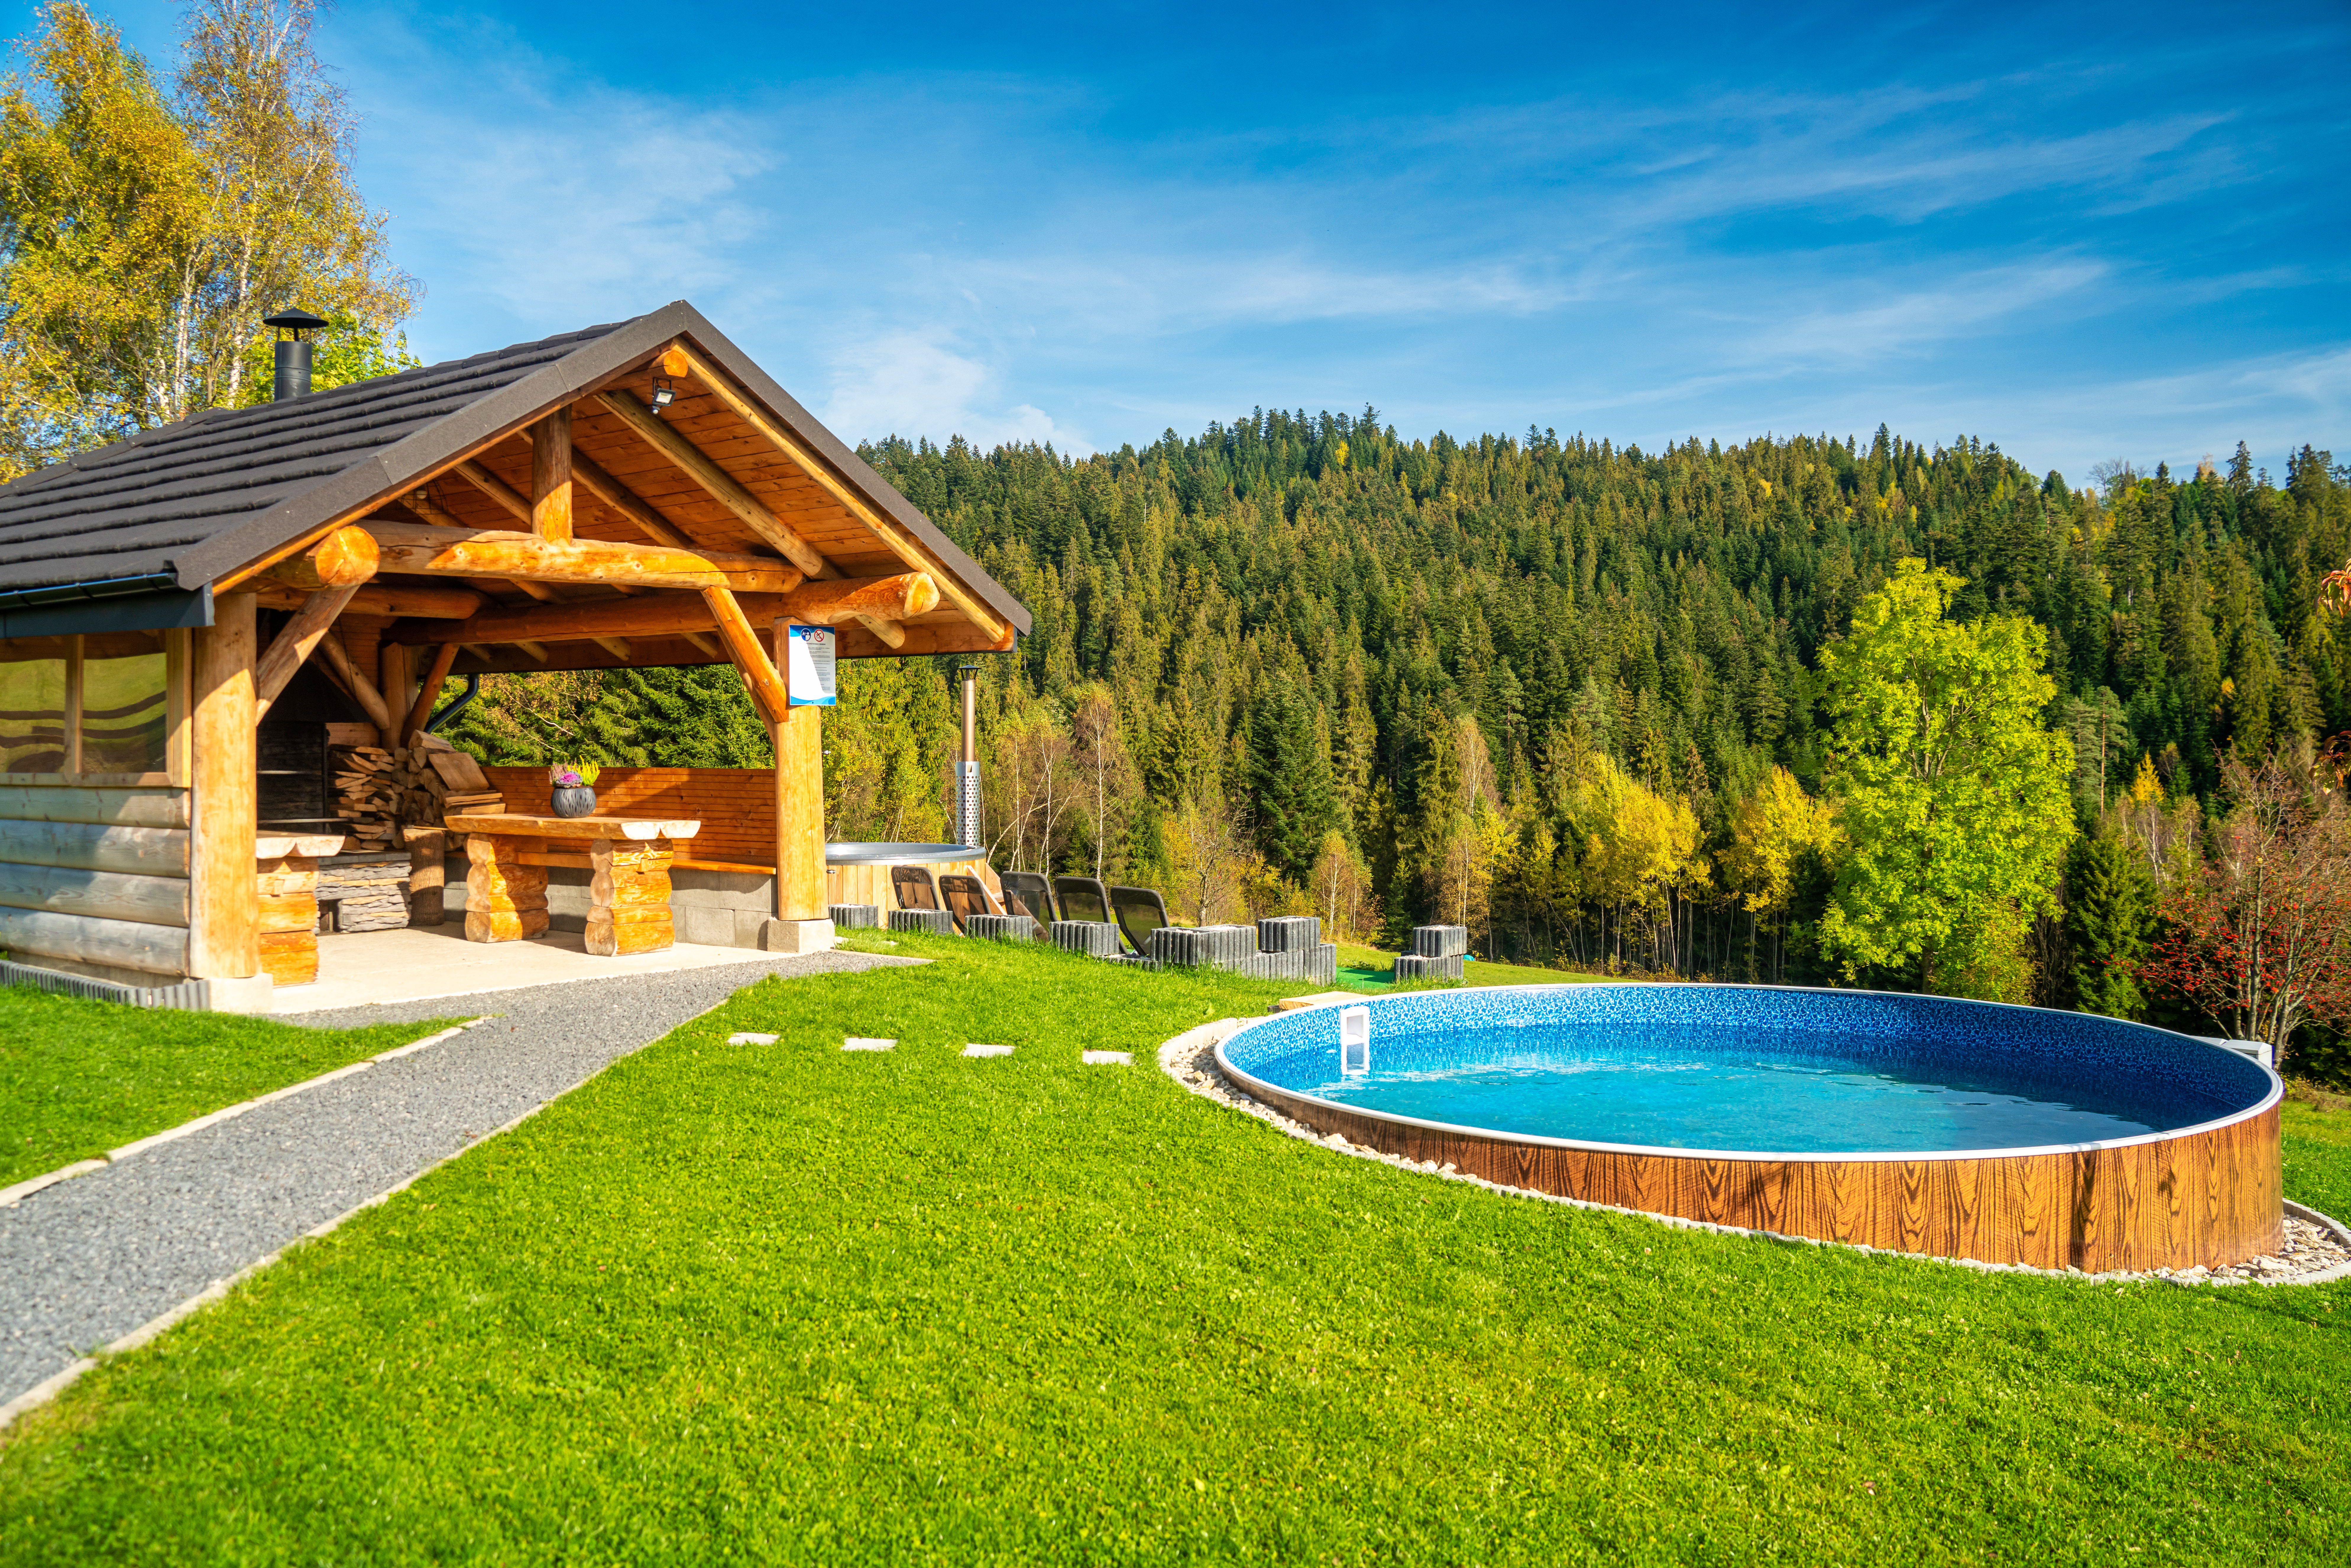 Domek w górach DeLuxe sauna jacuzzi balia basen - Guesthouses for Rent in  Nowy Targ, małopolskie, Poland - Airbnb